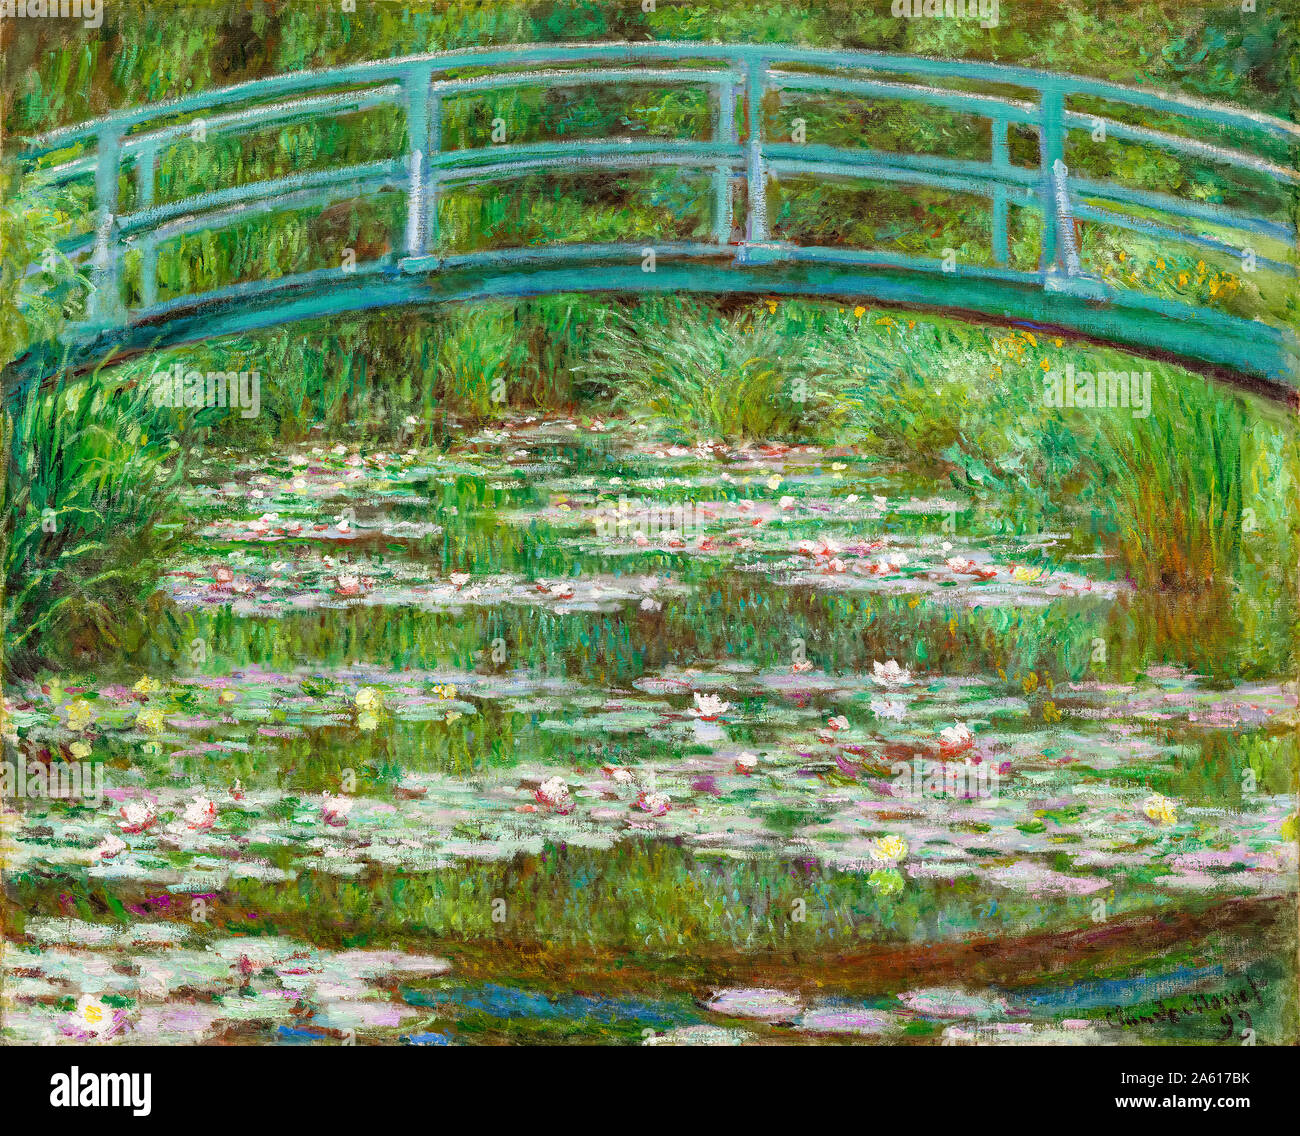 Claude Monet, peinture de paysage, le pont japonais, 1899 Banque D'Images